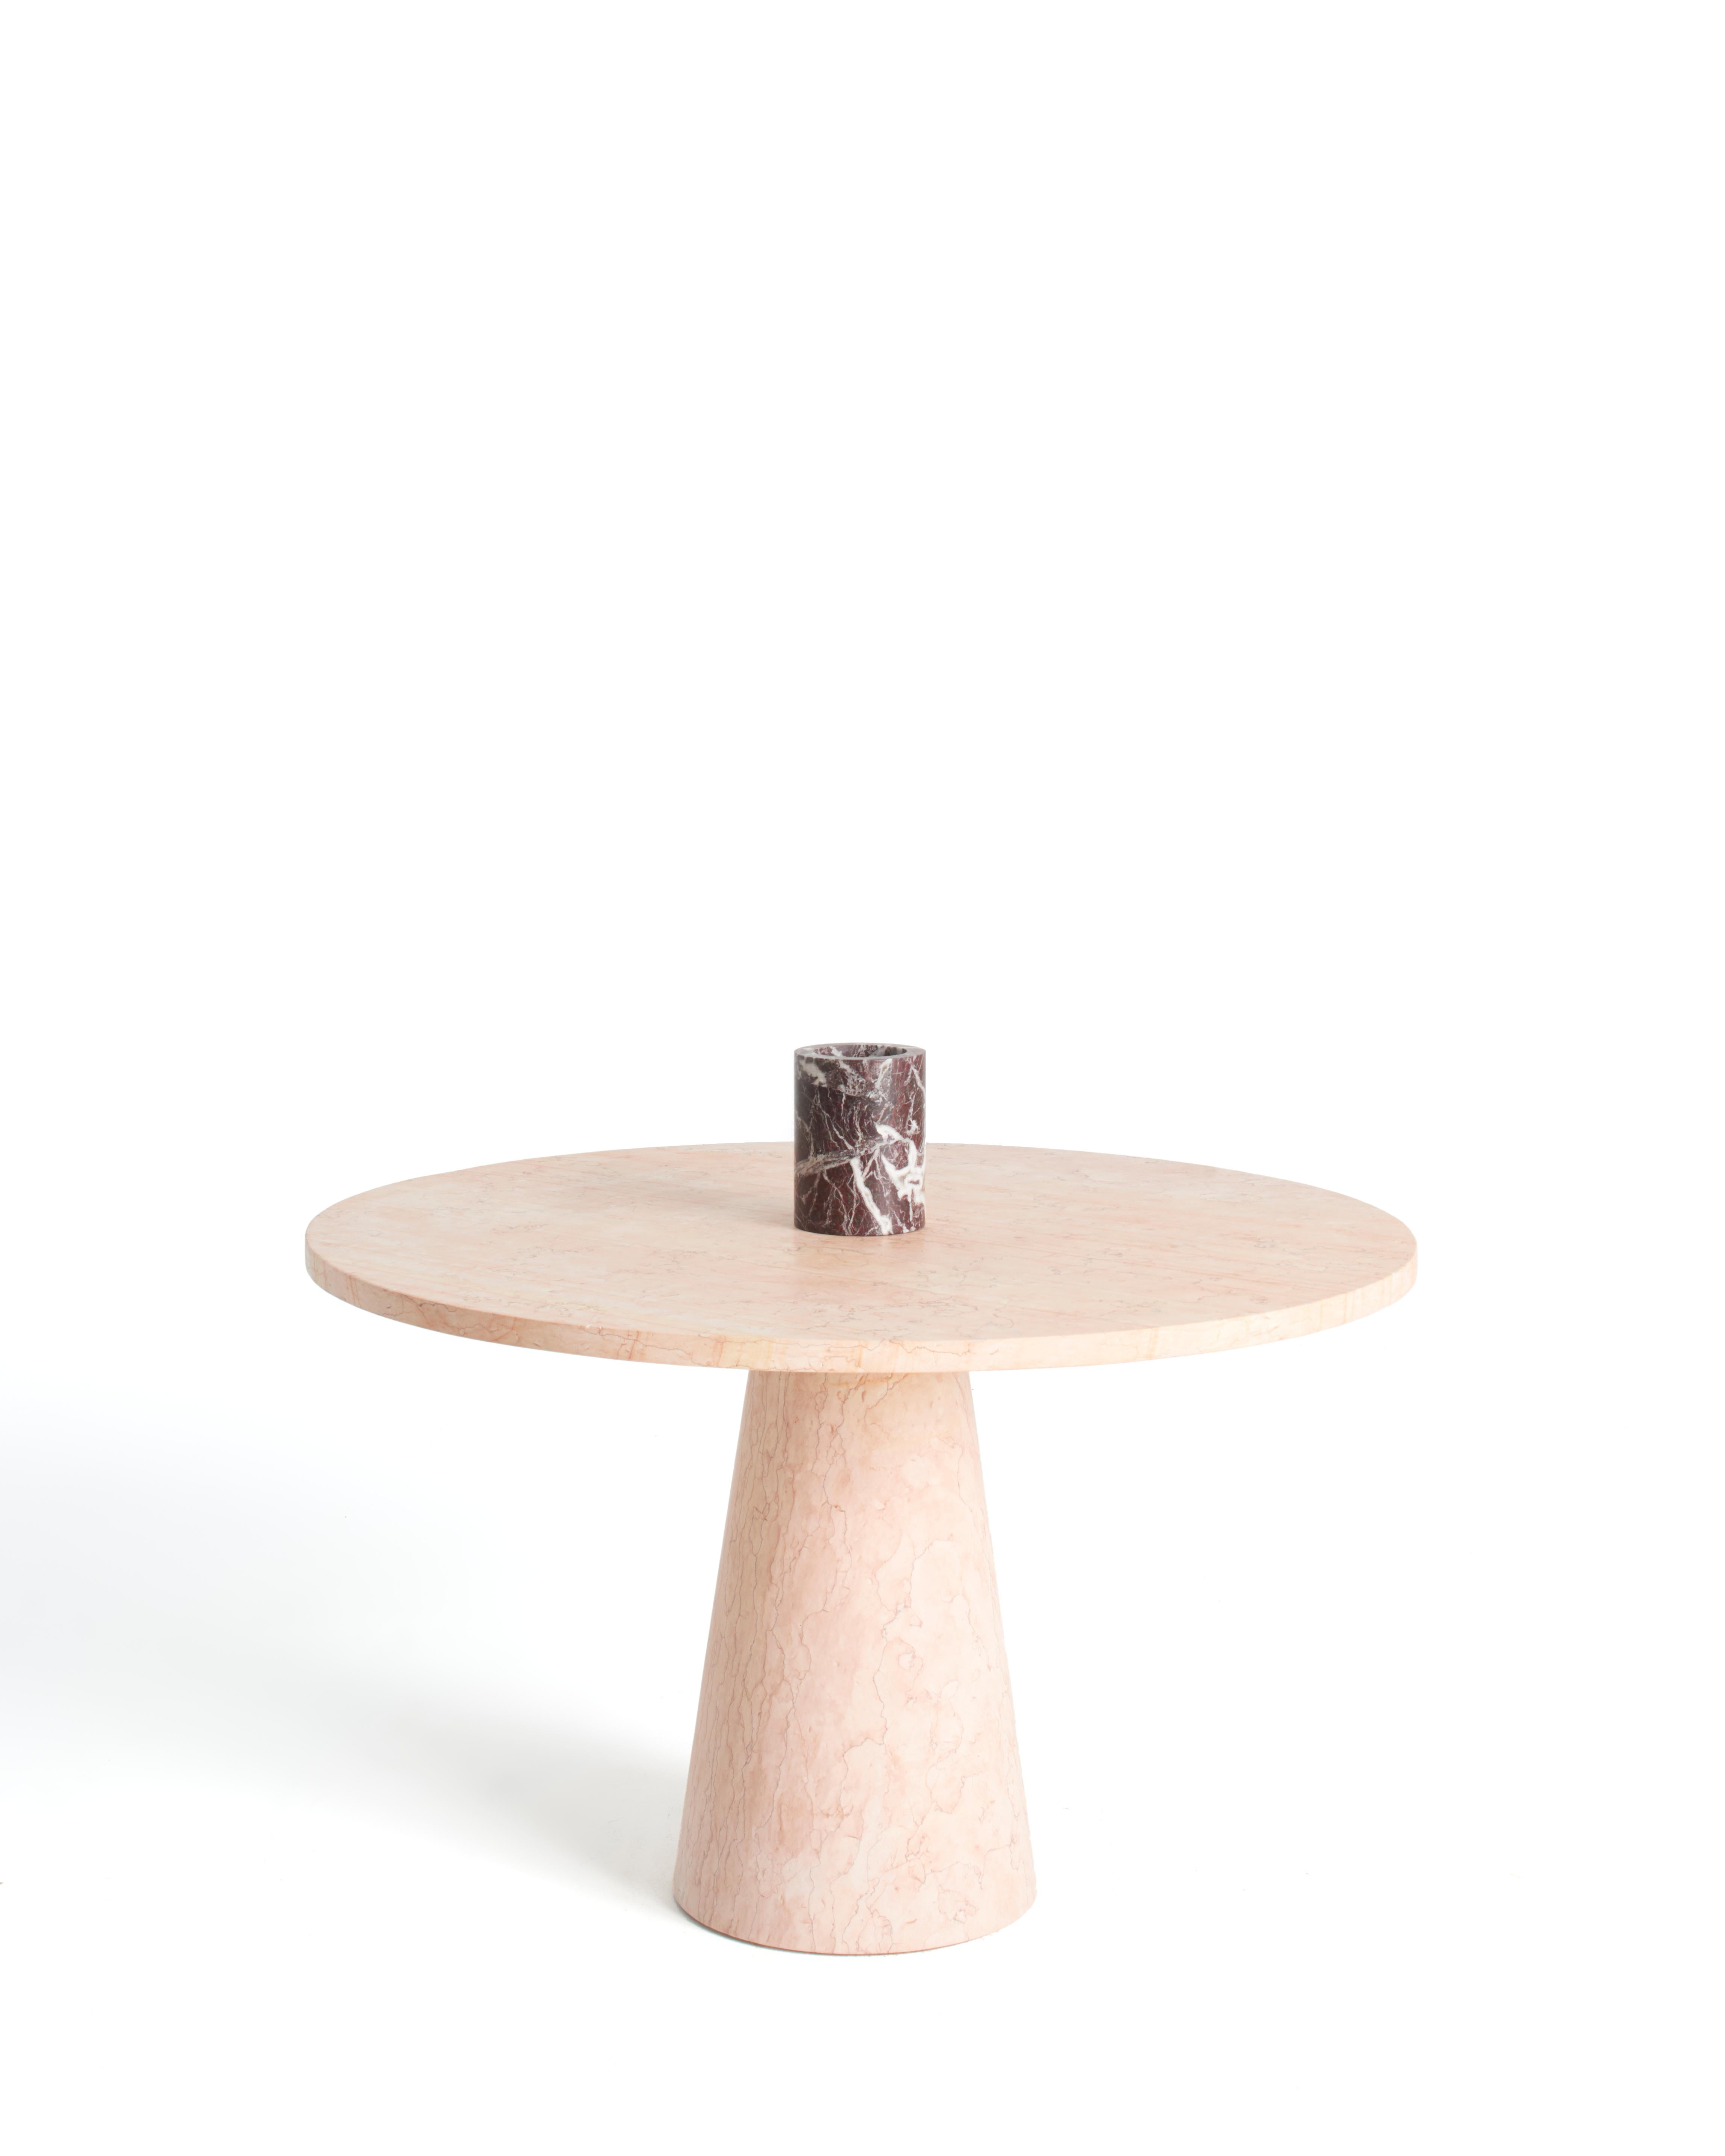 Table de salle à manger en marbre rose conçue par Karen Chekerdjian, faisant partie de la Collection S. - accessoires (coupe à fruits, bougies, vases à fleurs) tables en marbre rouge et noir. Il peut être personnalisé grâce à ses accessoires, vendus